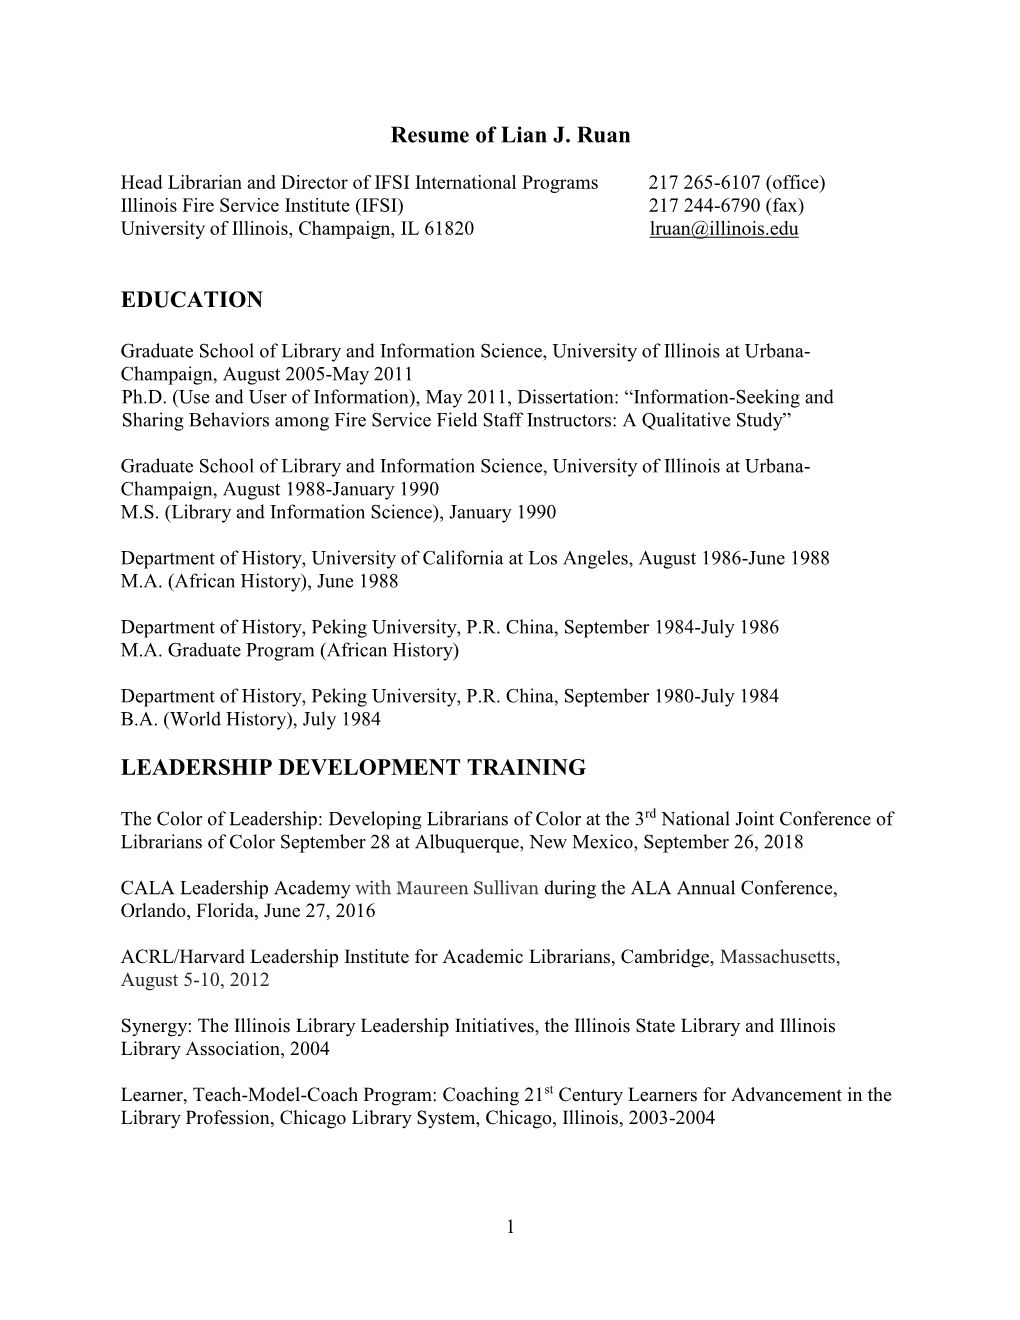 Resume of Lian J. Ruan EDUCATION LEADERSHIP DEVELOPMENT